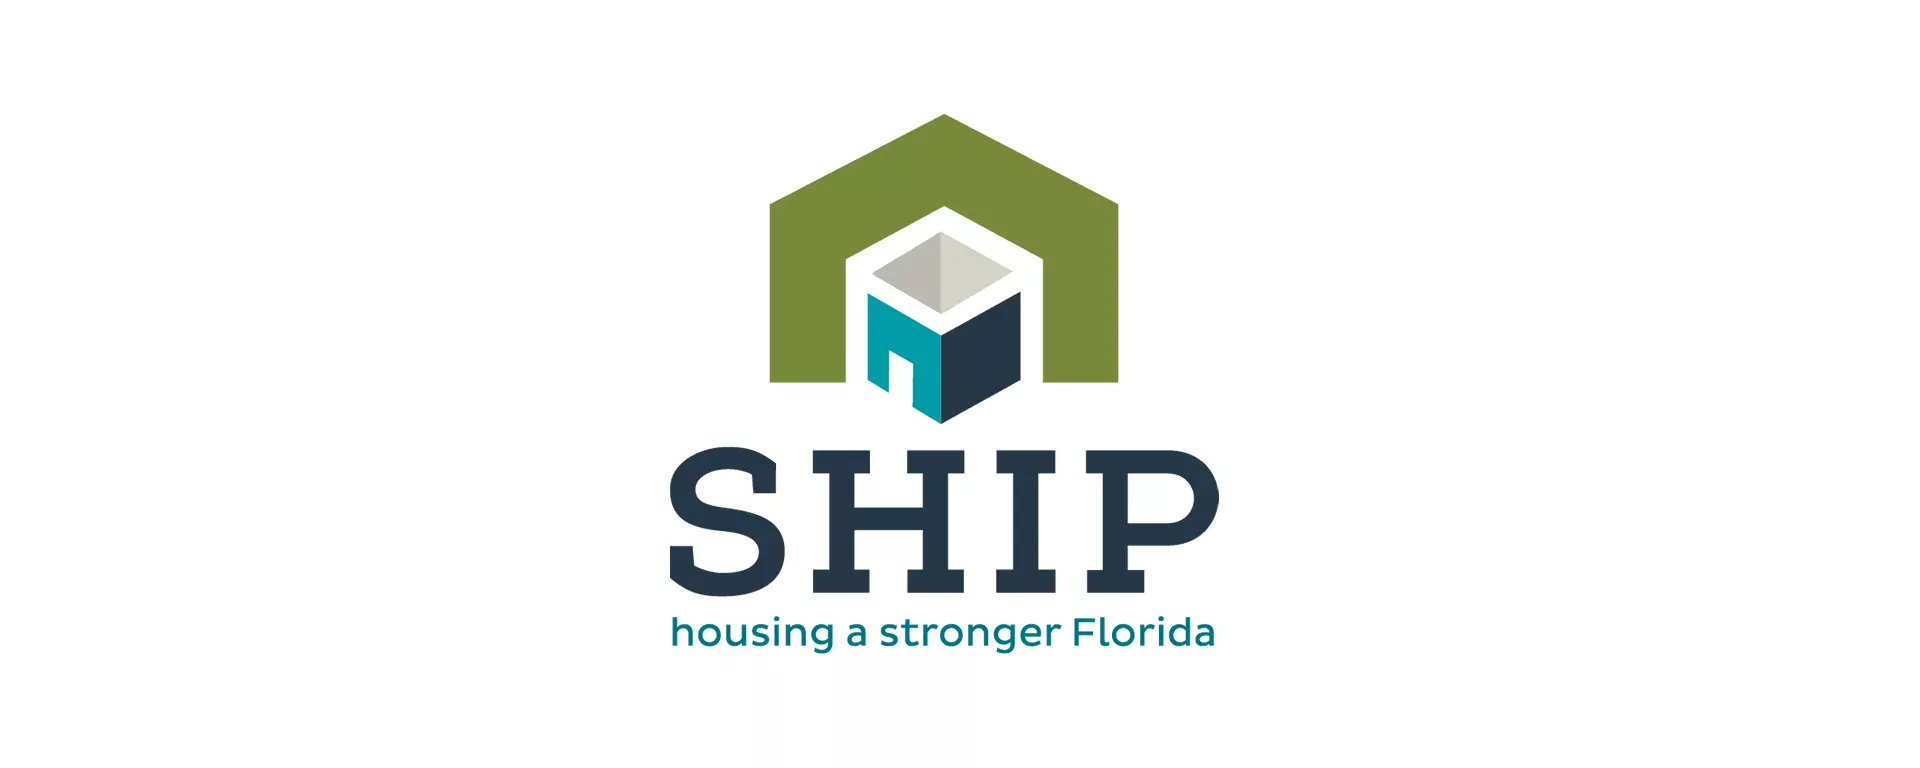 SHIP - Housing a Stronger Florida